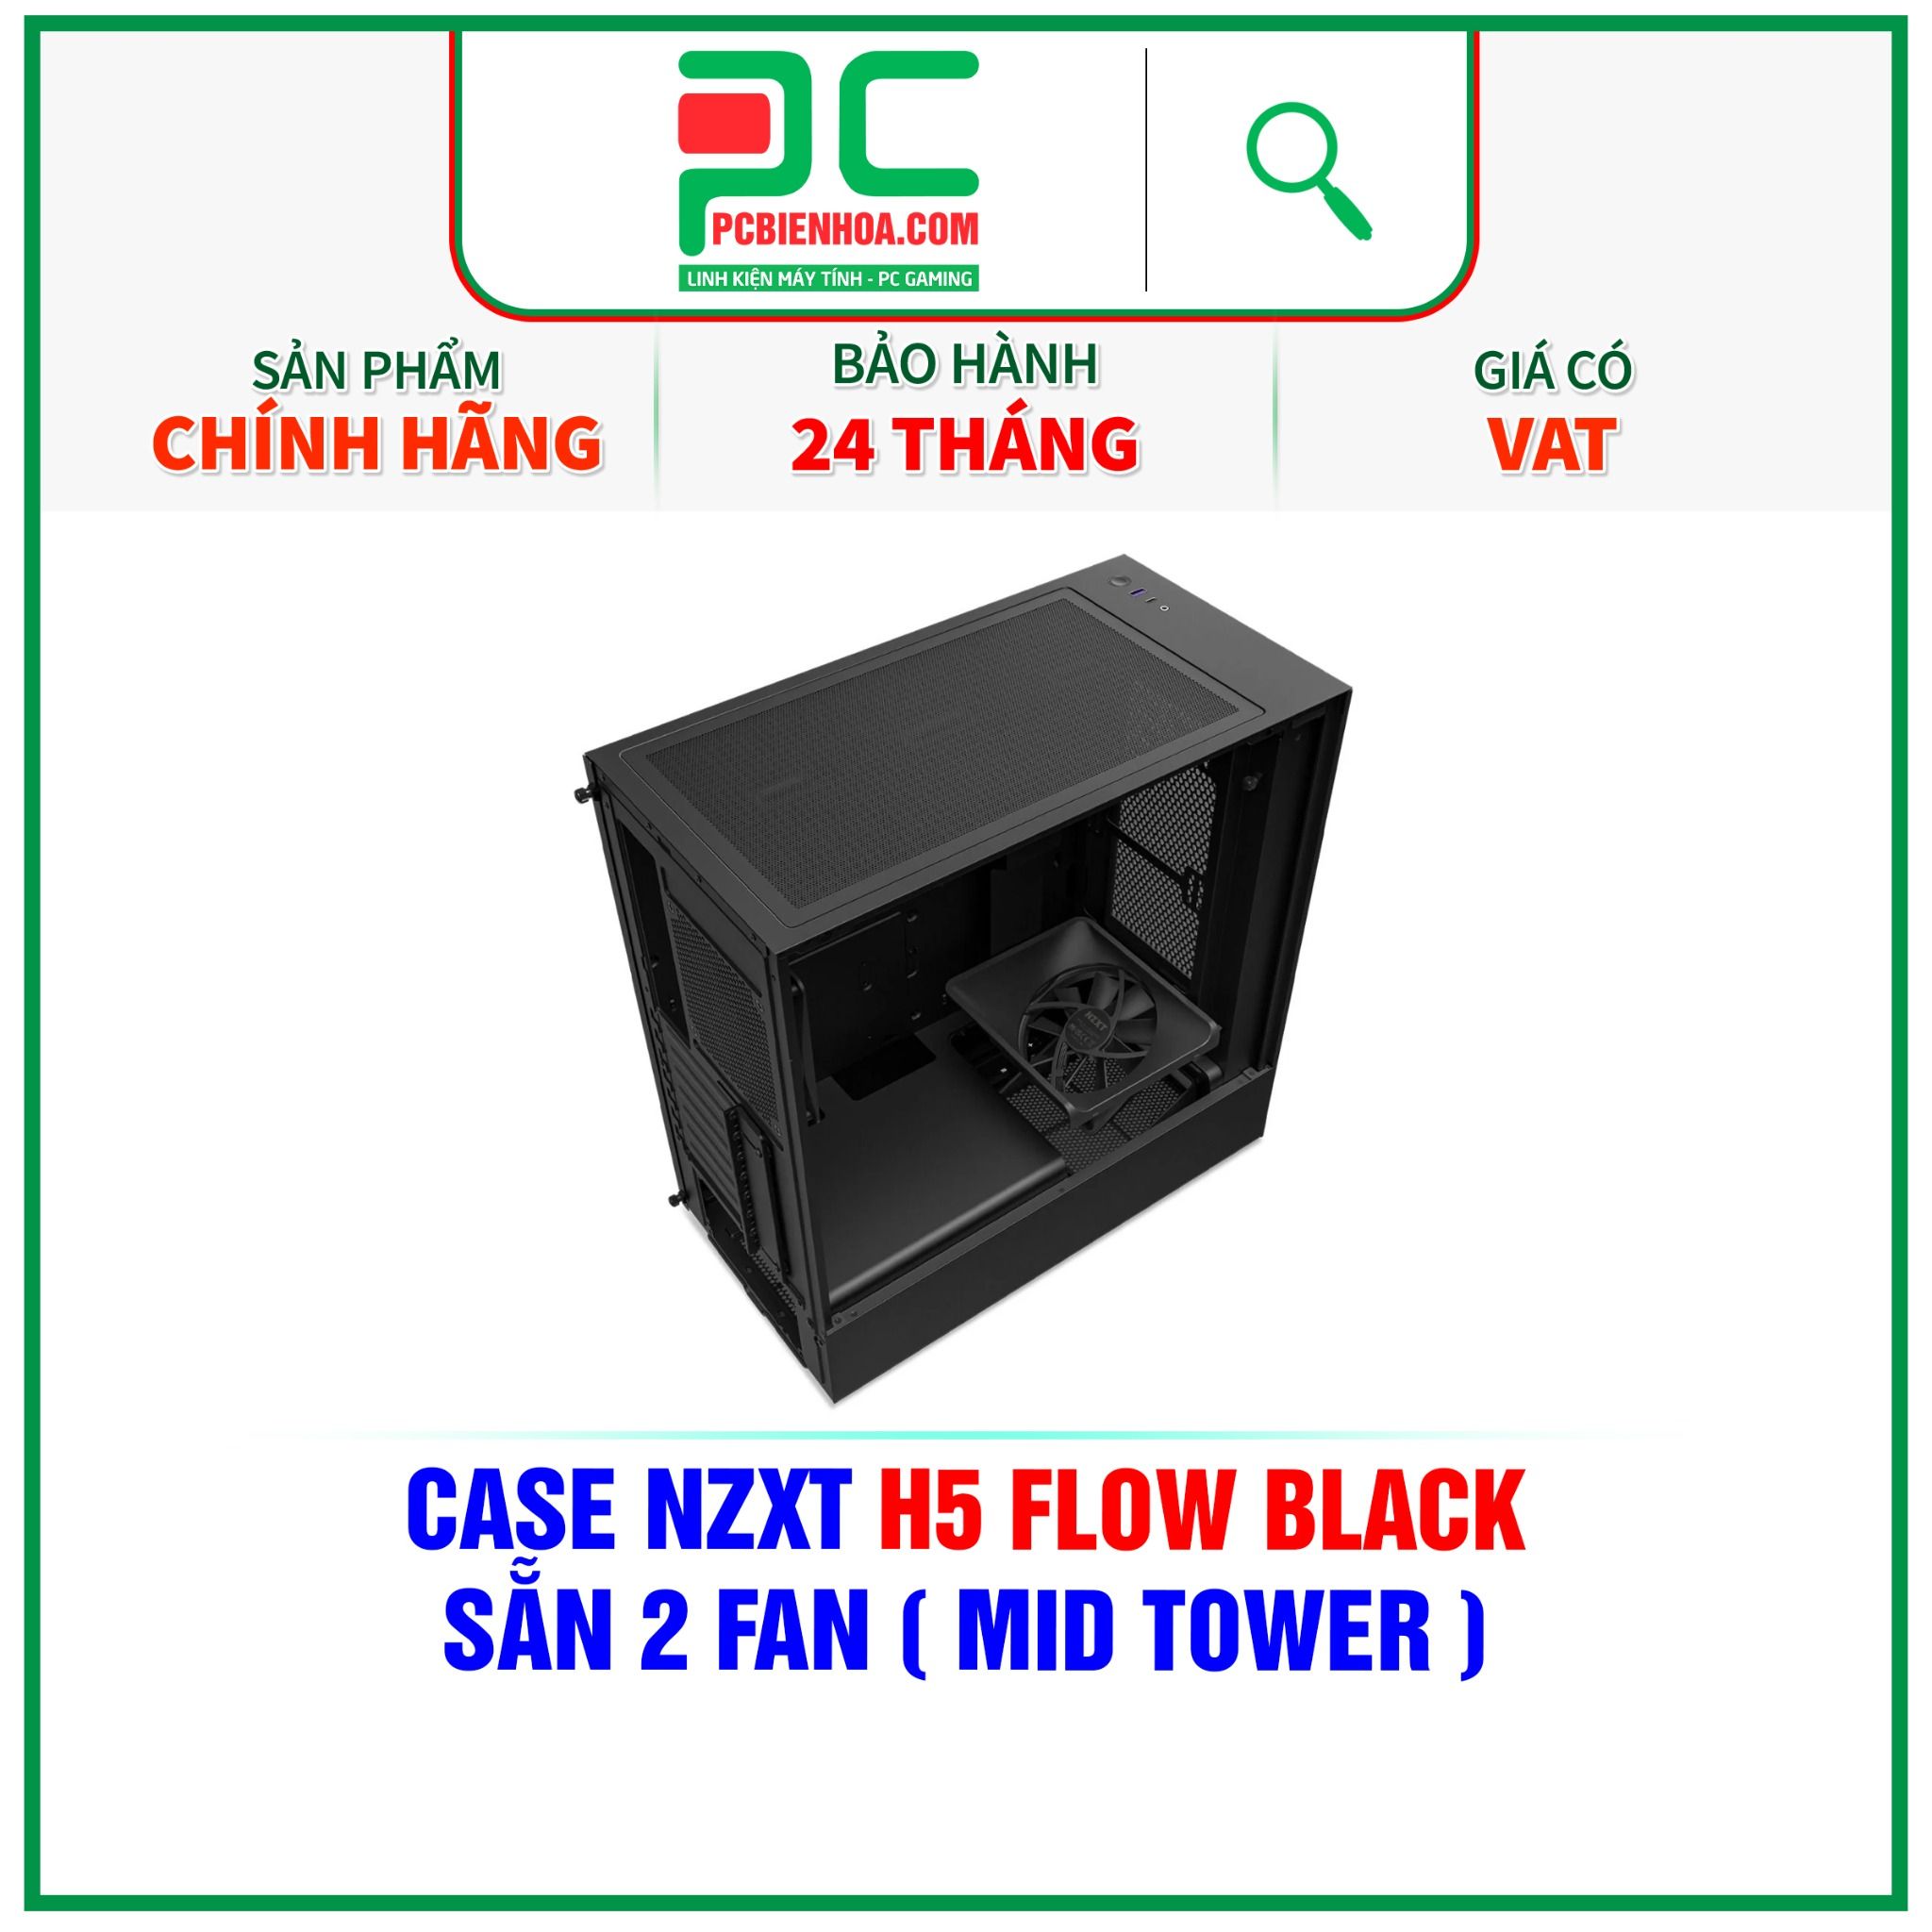  CASE NZXT H5 FLOW BLACK - SẴN 2 FAN ( MID TOWER ) 